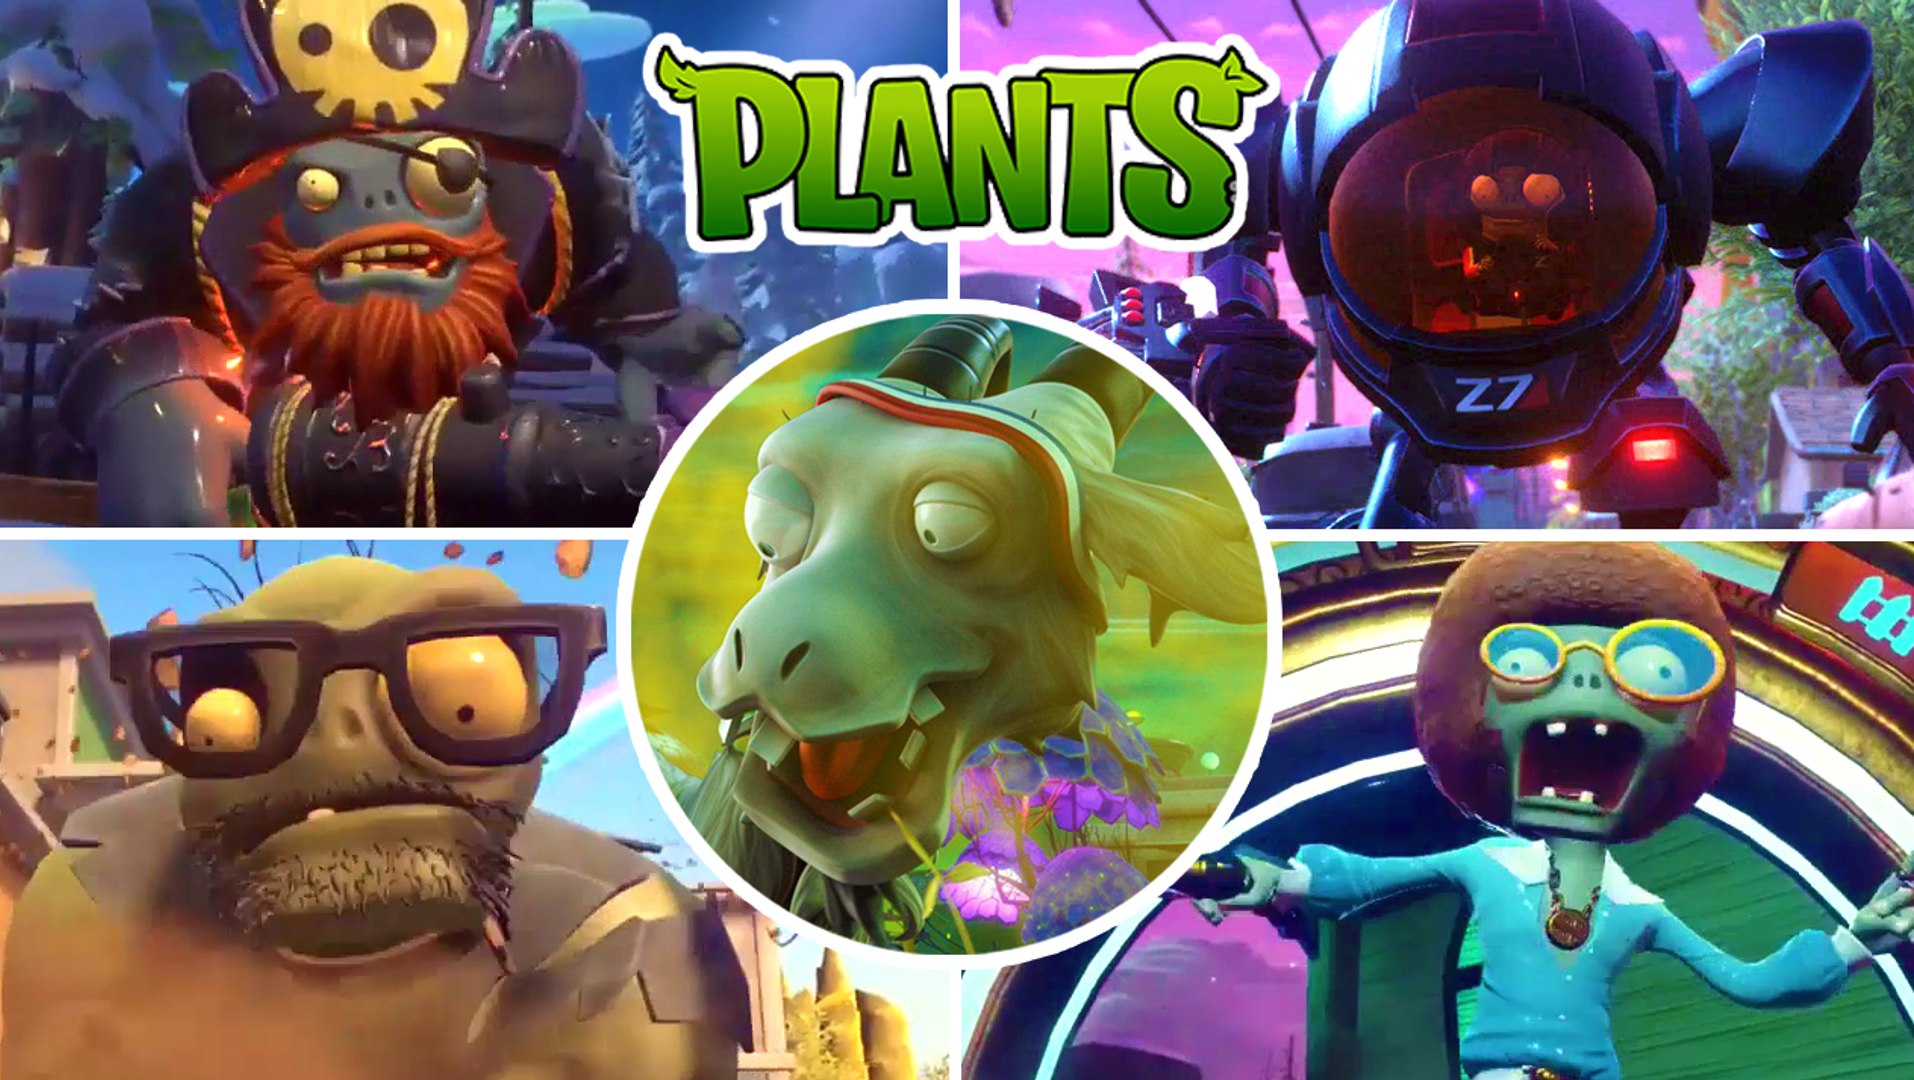 Plants vs Zombies Garden Warfare Hack - Win LIKE A BOSS!